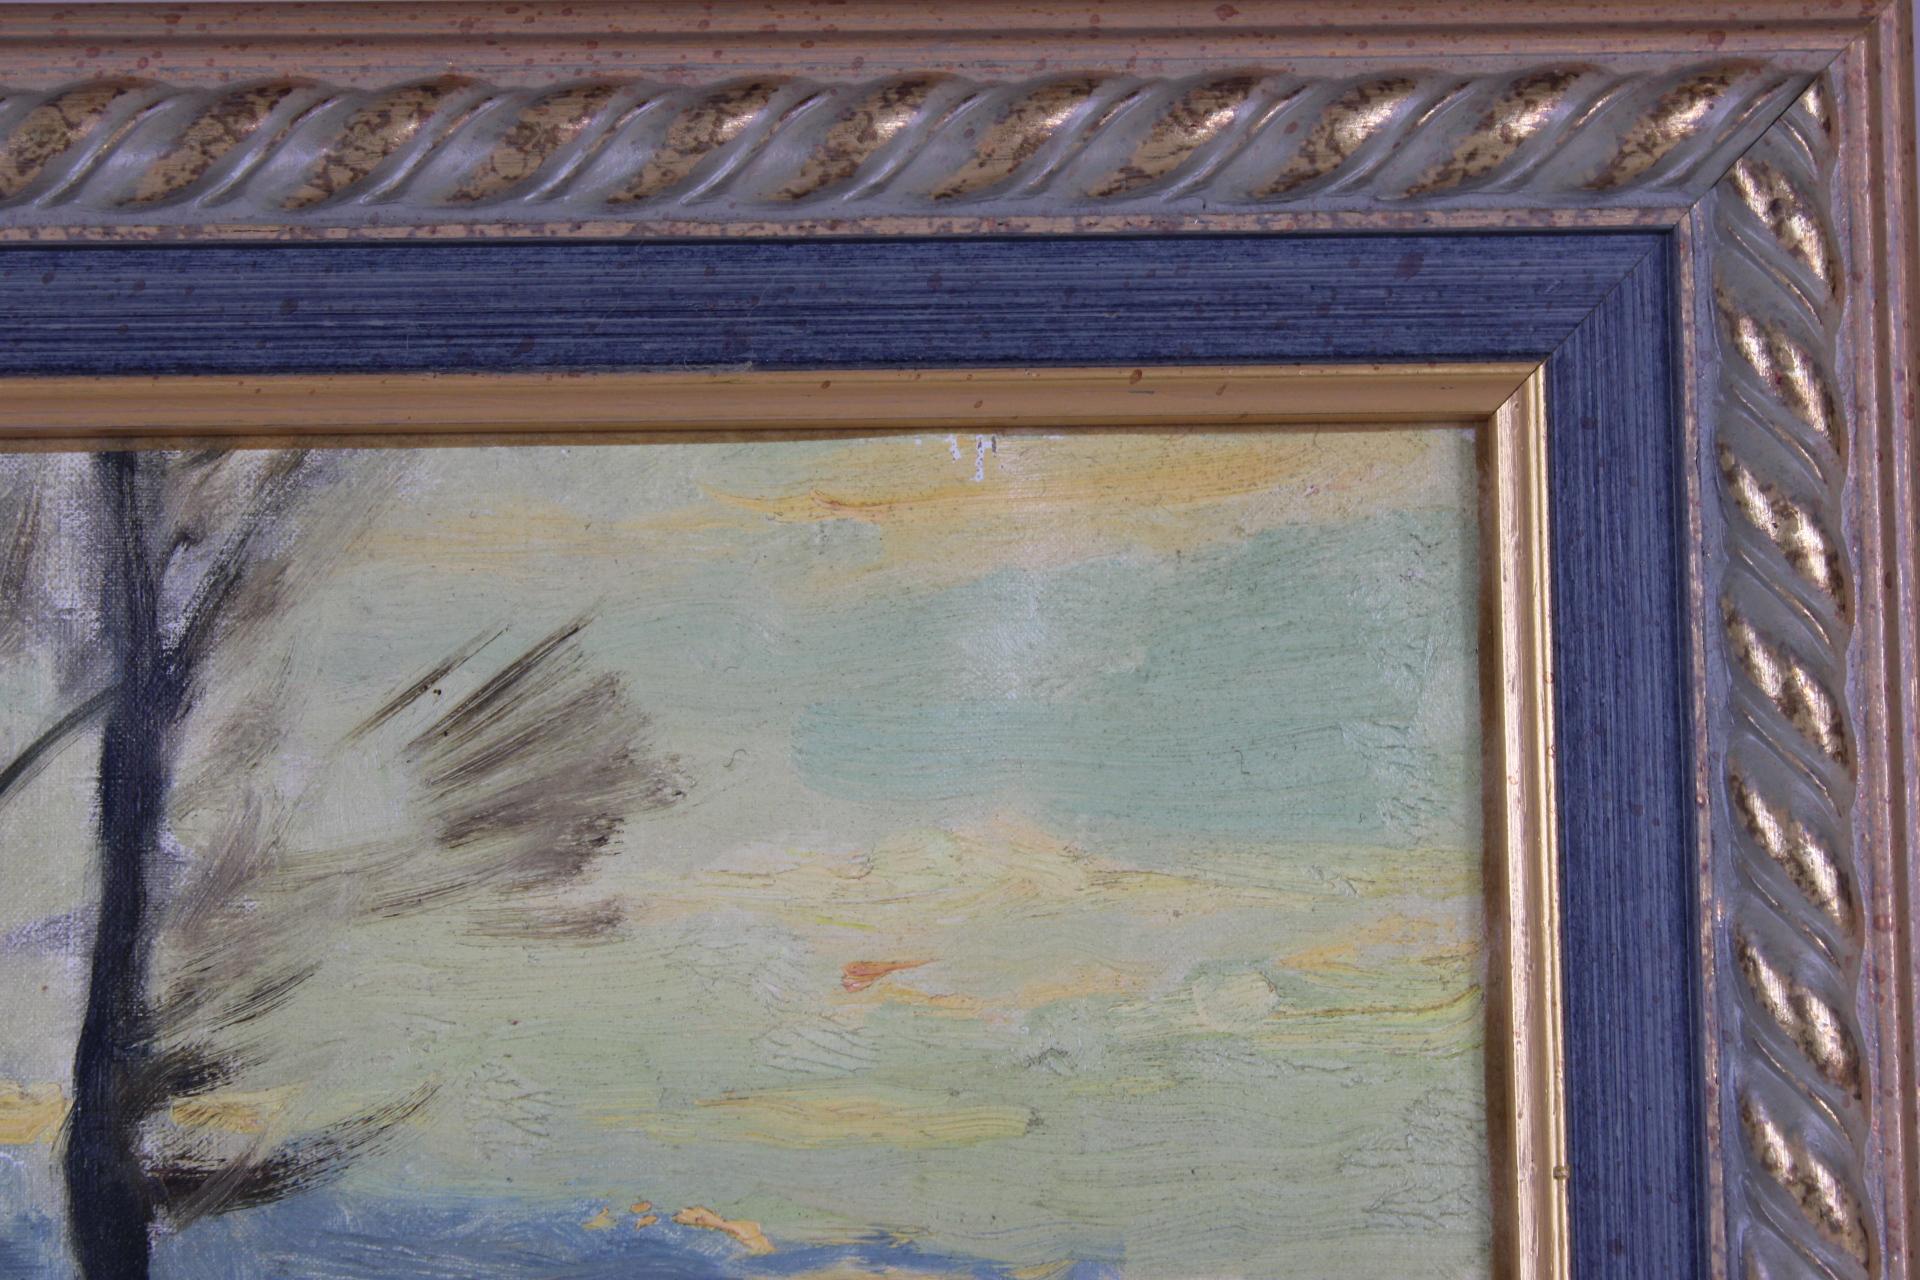 *Die Abmessungen umfassen den Rahmen

In diesem kleinen, stimmungsvollen Gemälde von Émile Louis Thivier (1858-1922) erzeugen die weichen Farb- und Lichtabstufungen des Himmels eine sanfte, atmosphärische Qualität, die für die Werke des